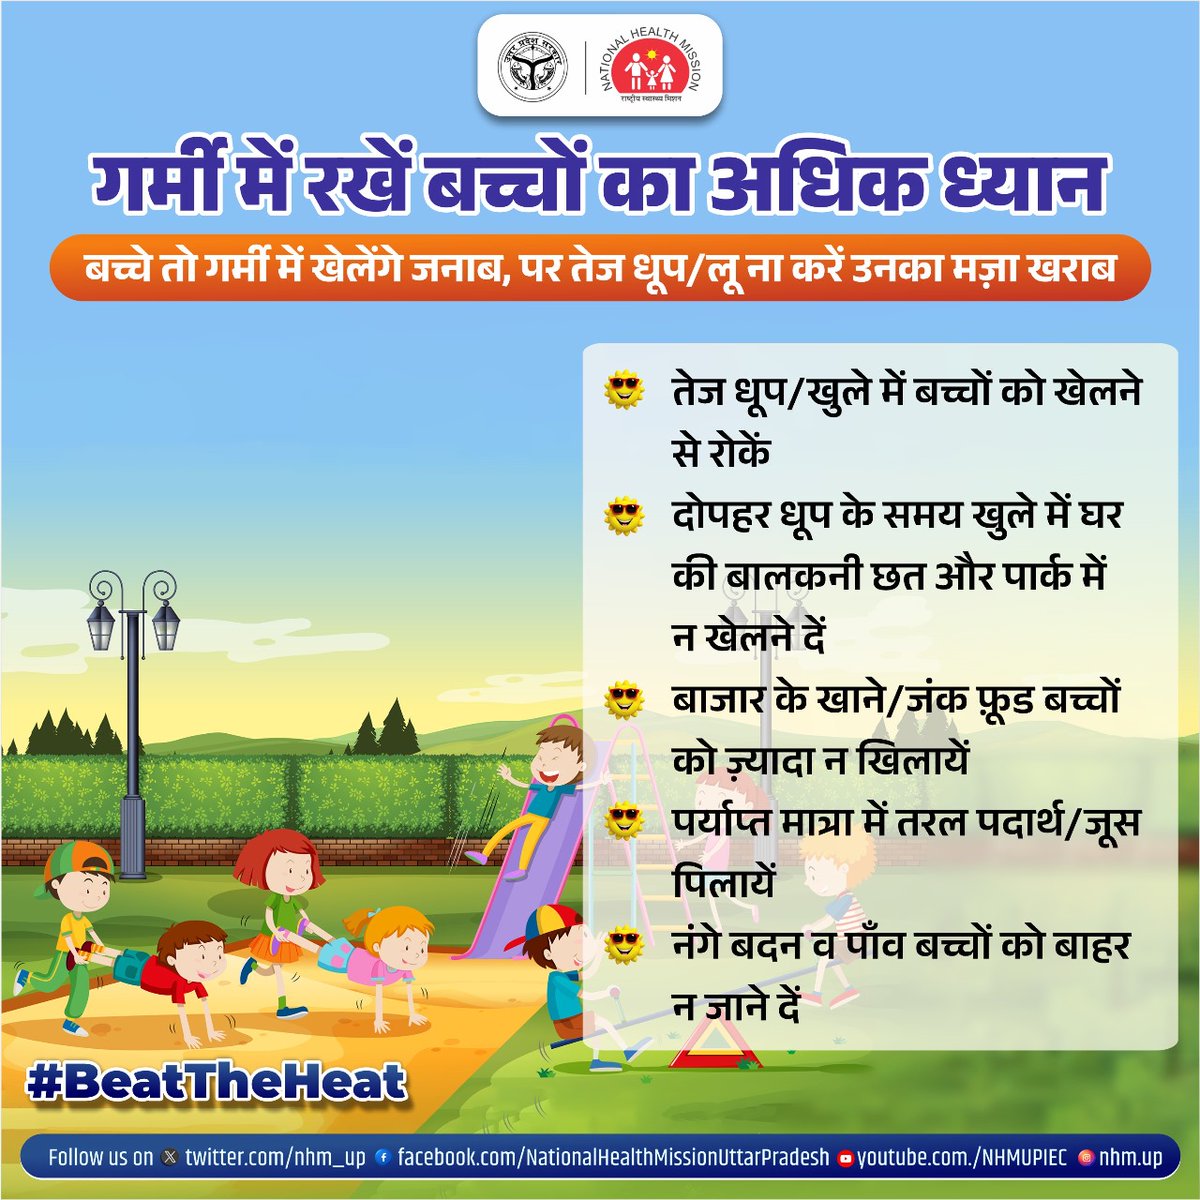 गर्मी में रखे बच्चों का अधिक ख्याल, खेल-कूद में कहीं न हो जाये उनकी सेहत खराब! बच्चें जब भी खेलें कुछ जरूरी एहतियात को अपनाये और गर्मी के हानिकारक प्रभावों से उनको बचाये! #BeatTheHeat #Heatwave